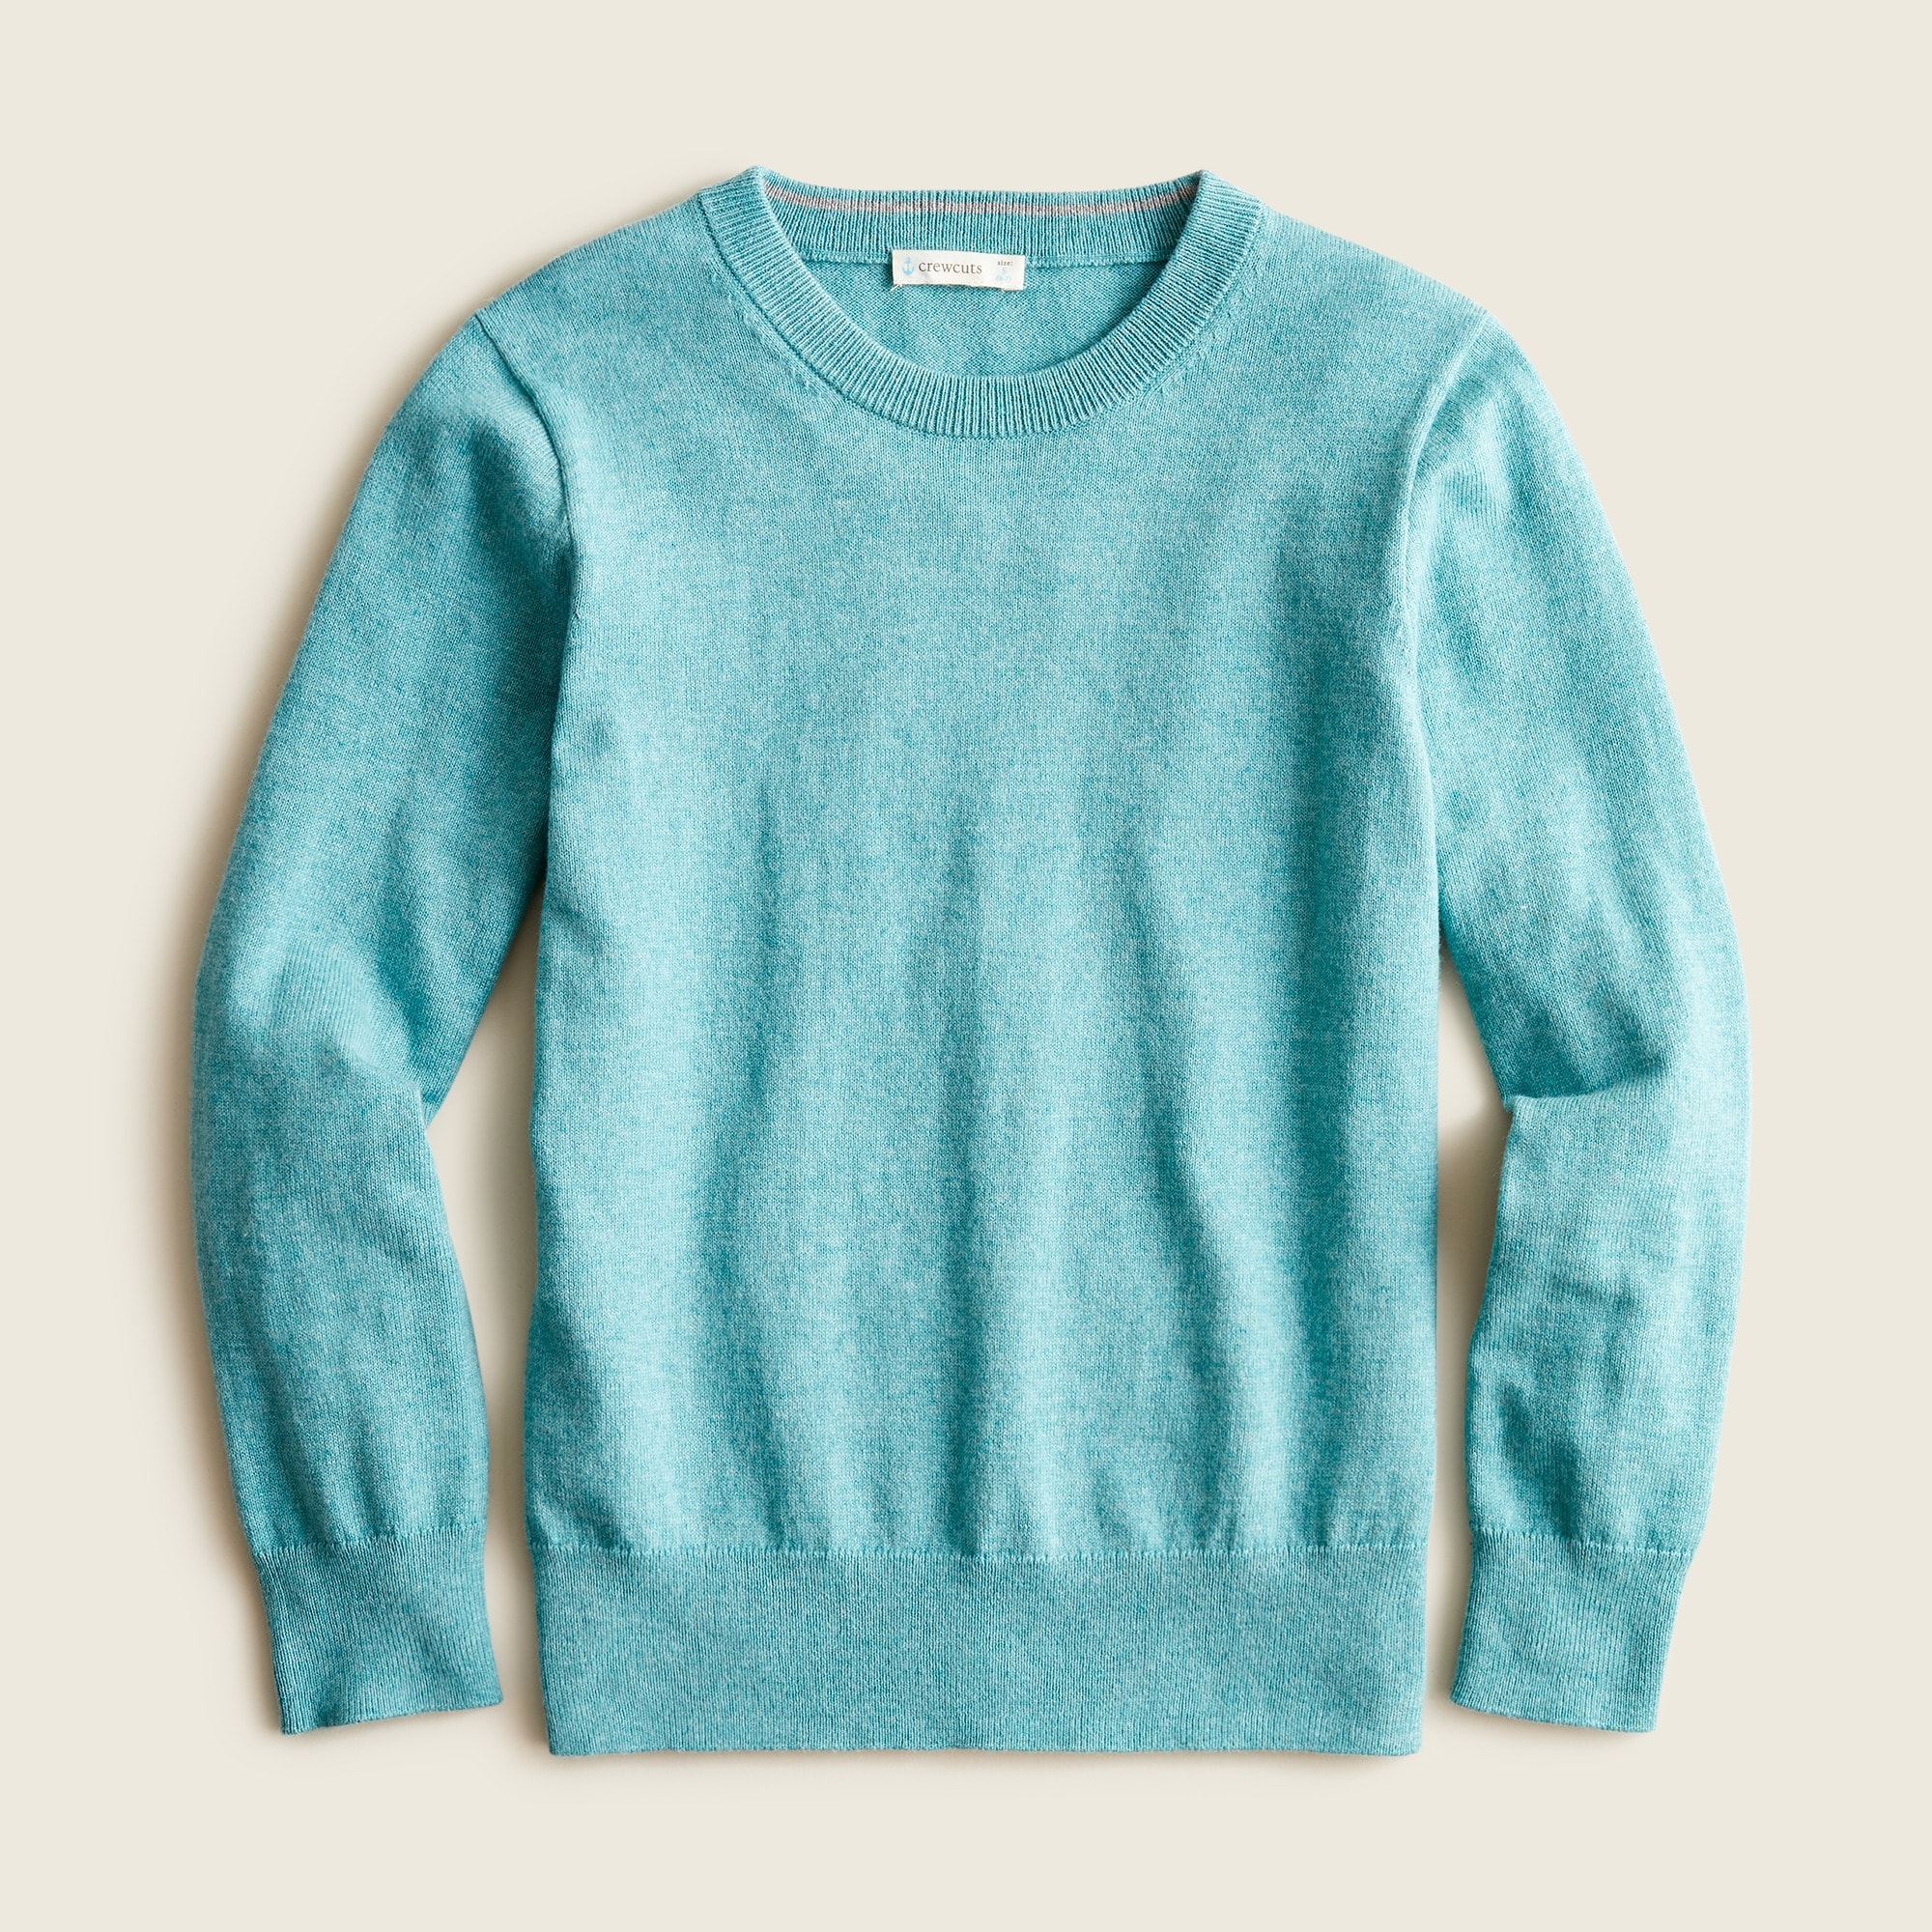 제이크루 보이즈 스웨터 J.crew Boys cotton-cashmere crewneck sweater,HTHR JADE